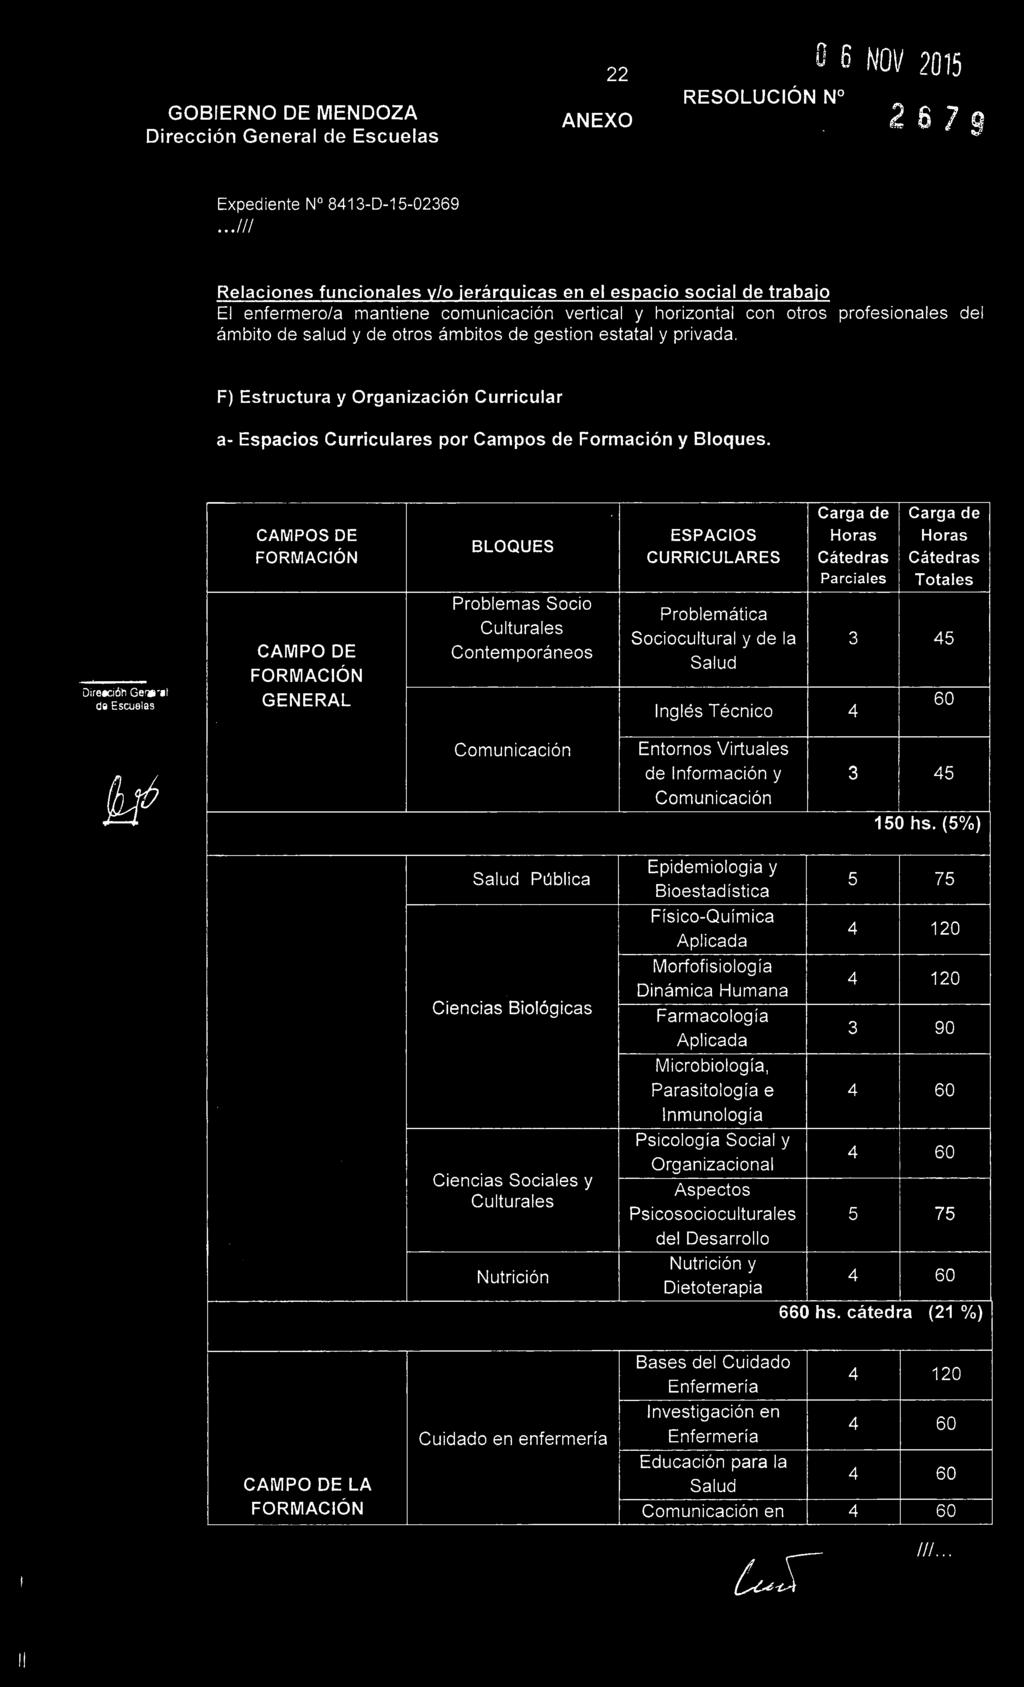 estatal y privada. F) Estructura y OrgaizaciO Curricular a- Espacios Curriculares por Campos de Formaci6 y Bloques.